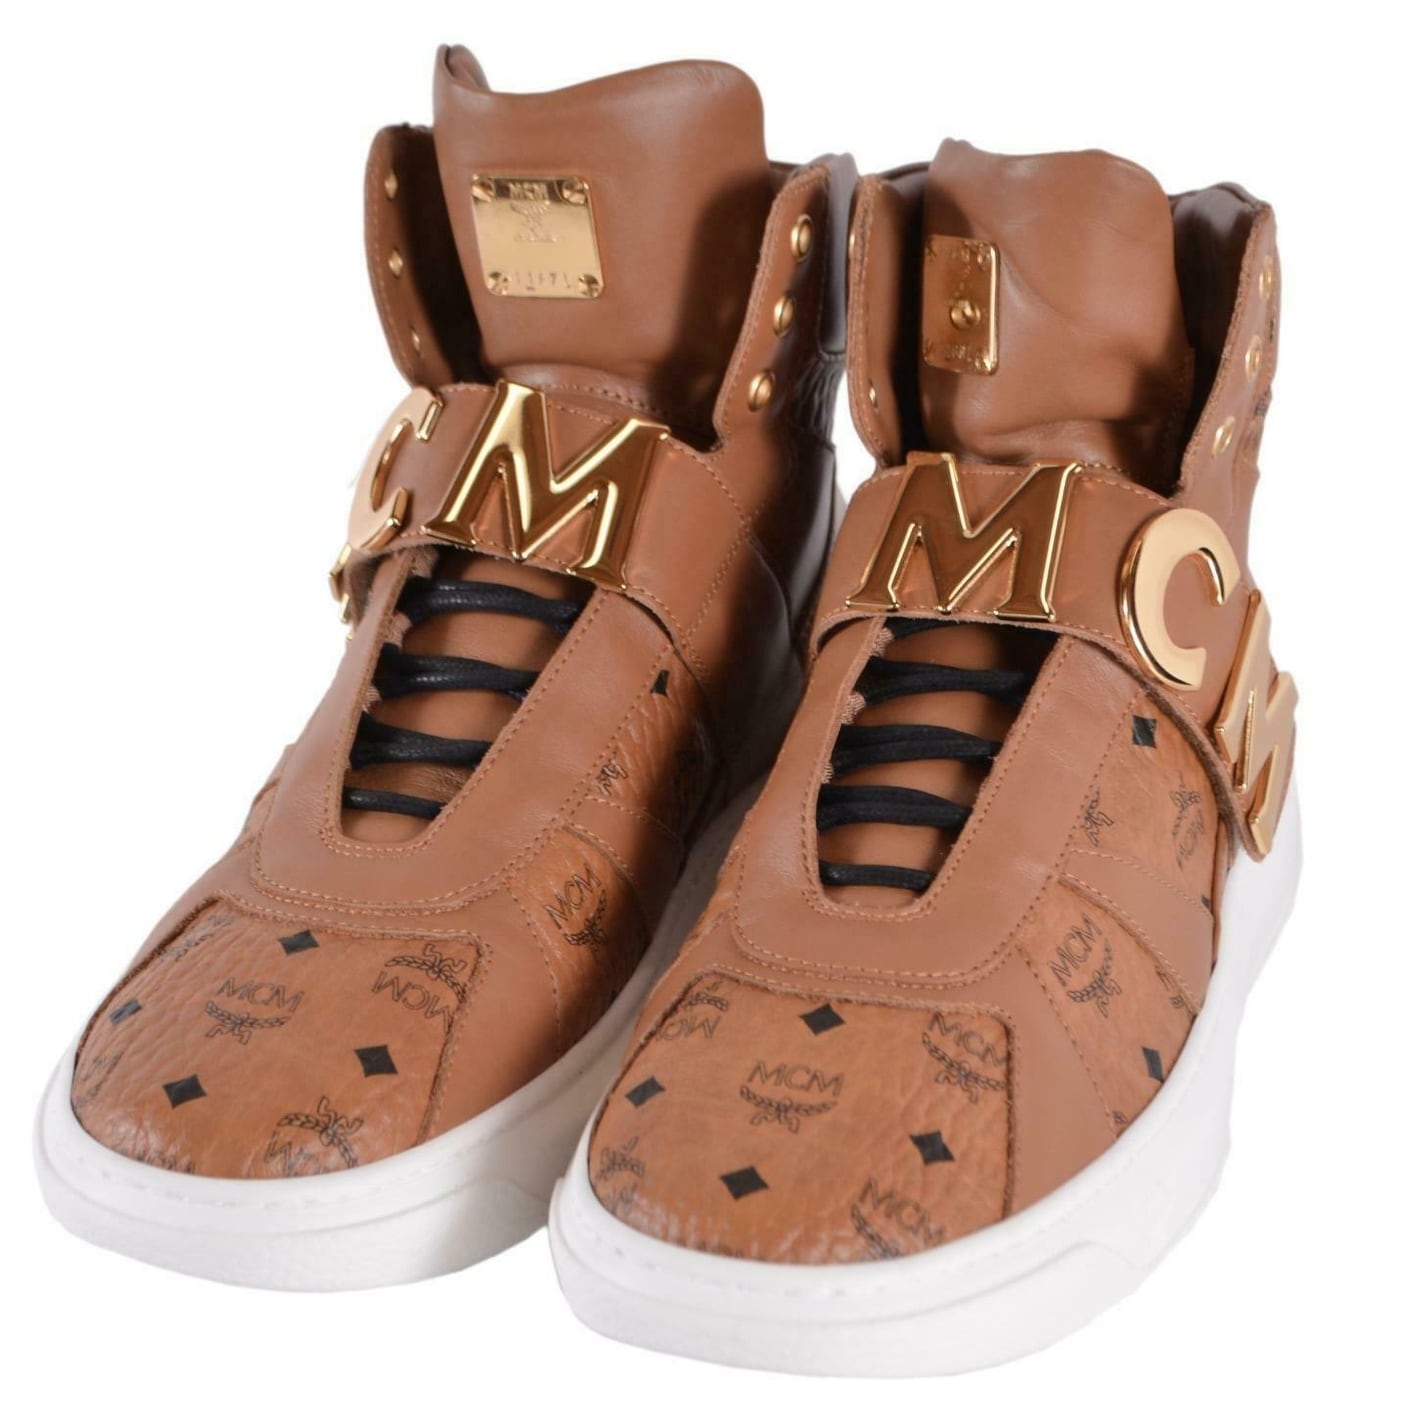 mcm sneakers sale